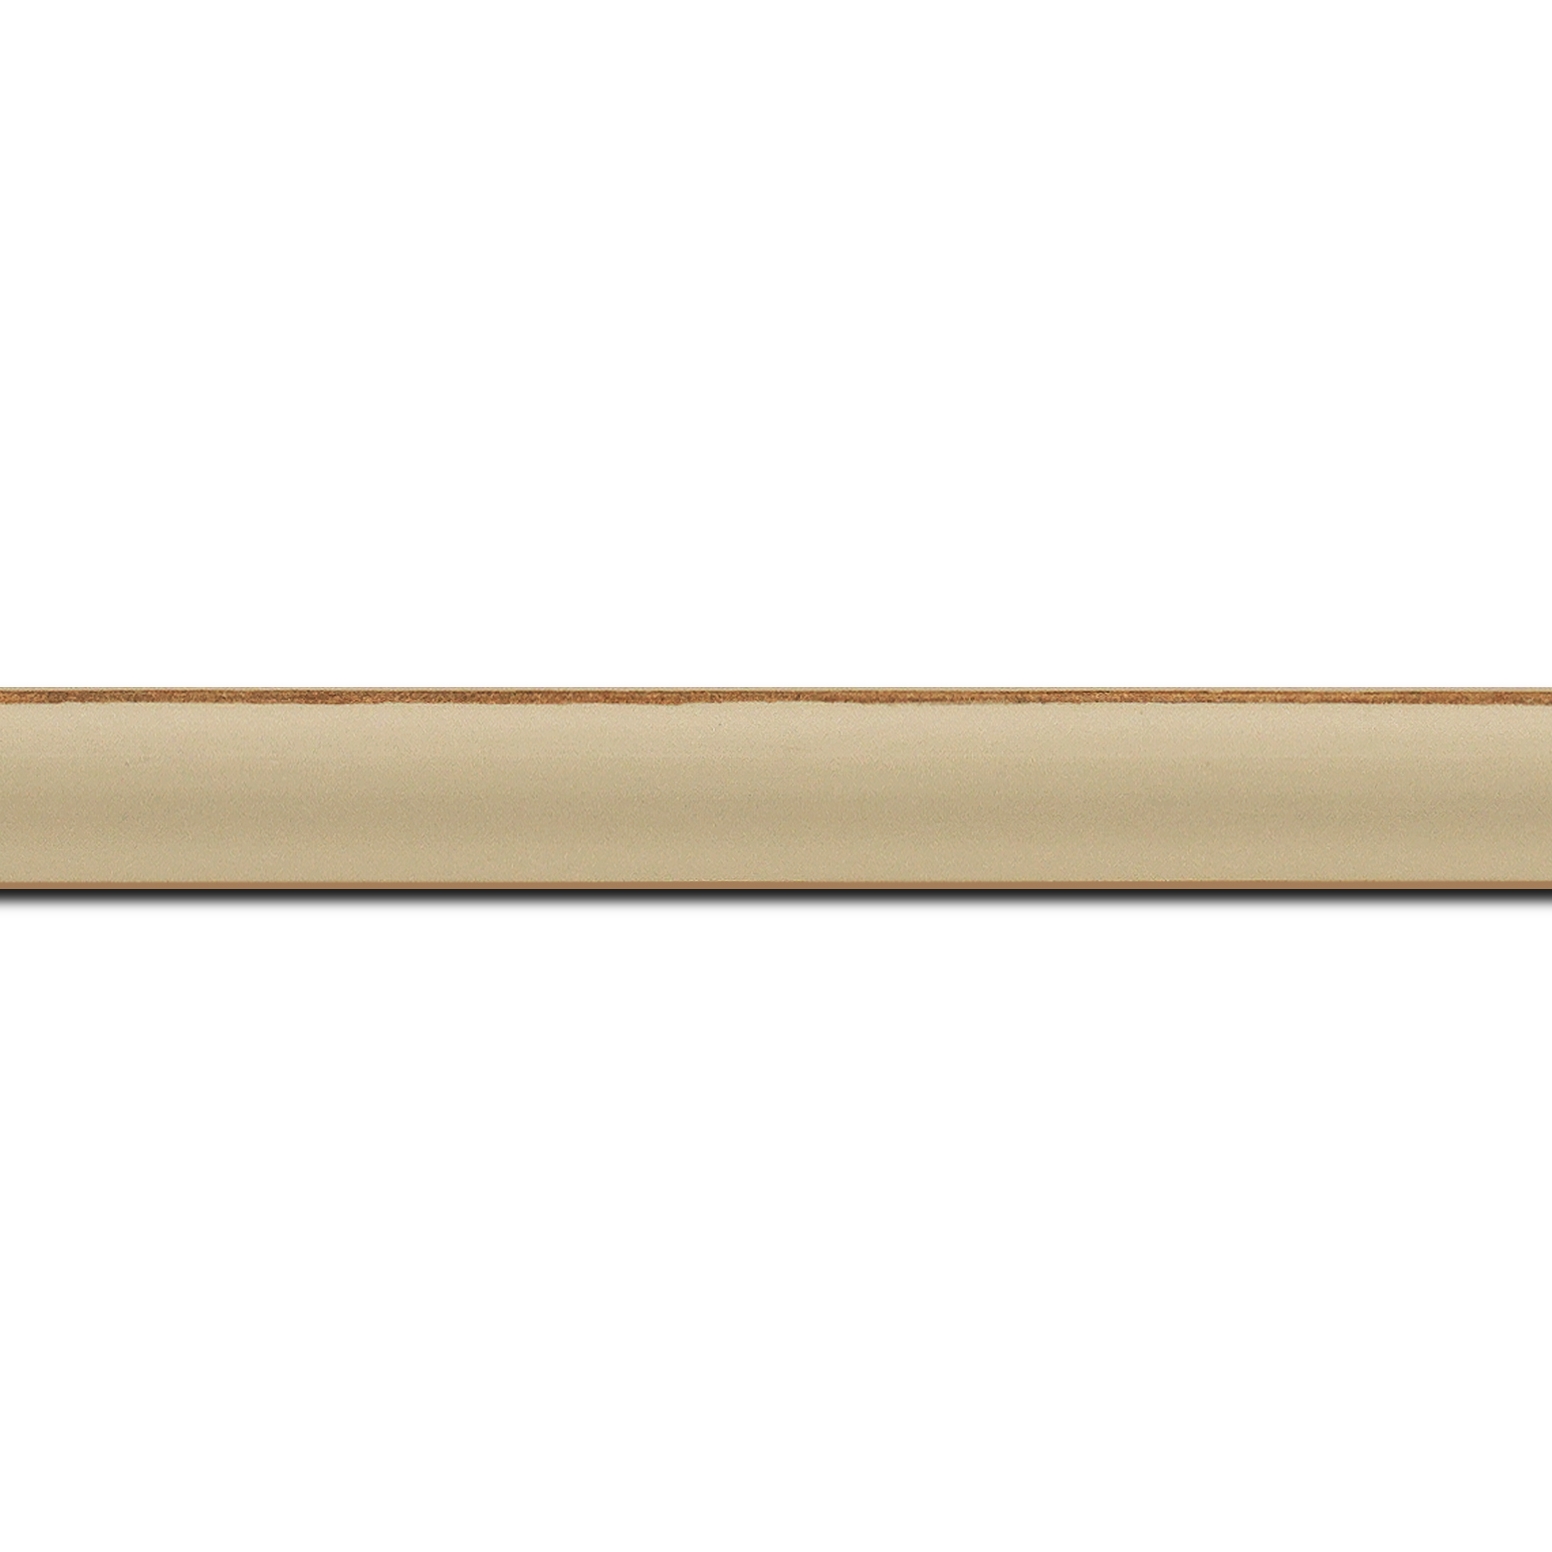 Pack par 12m, bois profil incurvé largeur 1.9cm couleur moka mat bord ressuyé (longueur baguette pouvant varier entre 2.40m et 3m selon arrivage des bois)